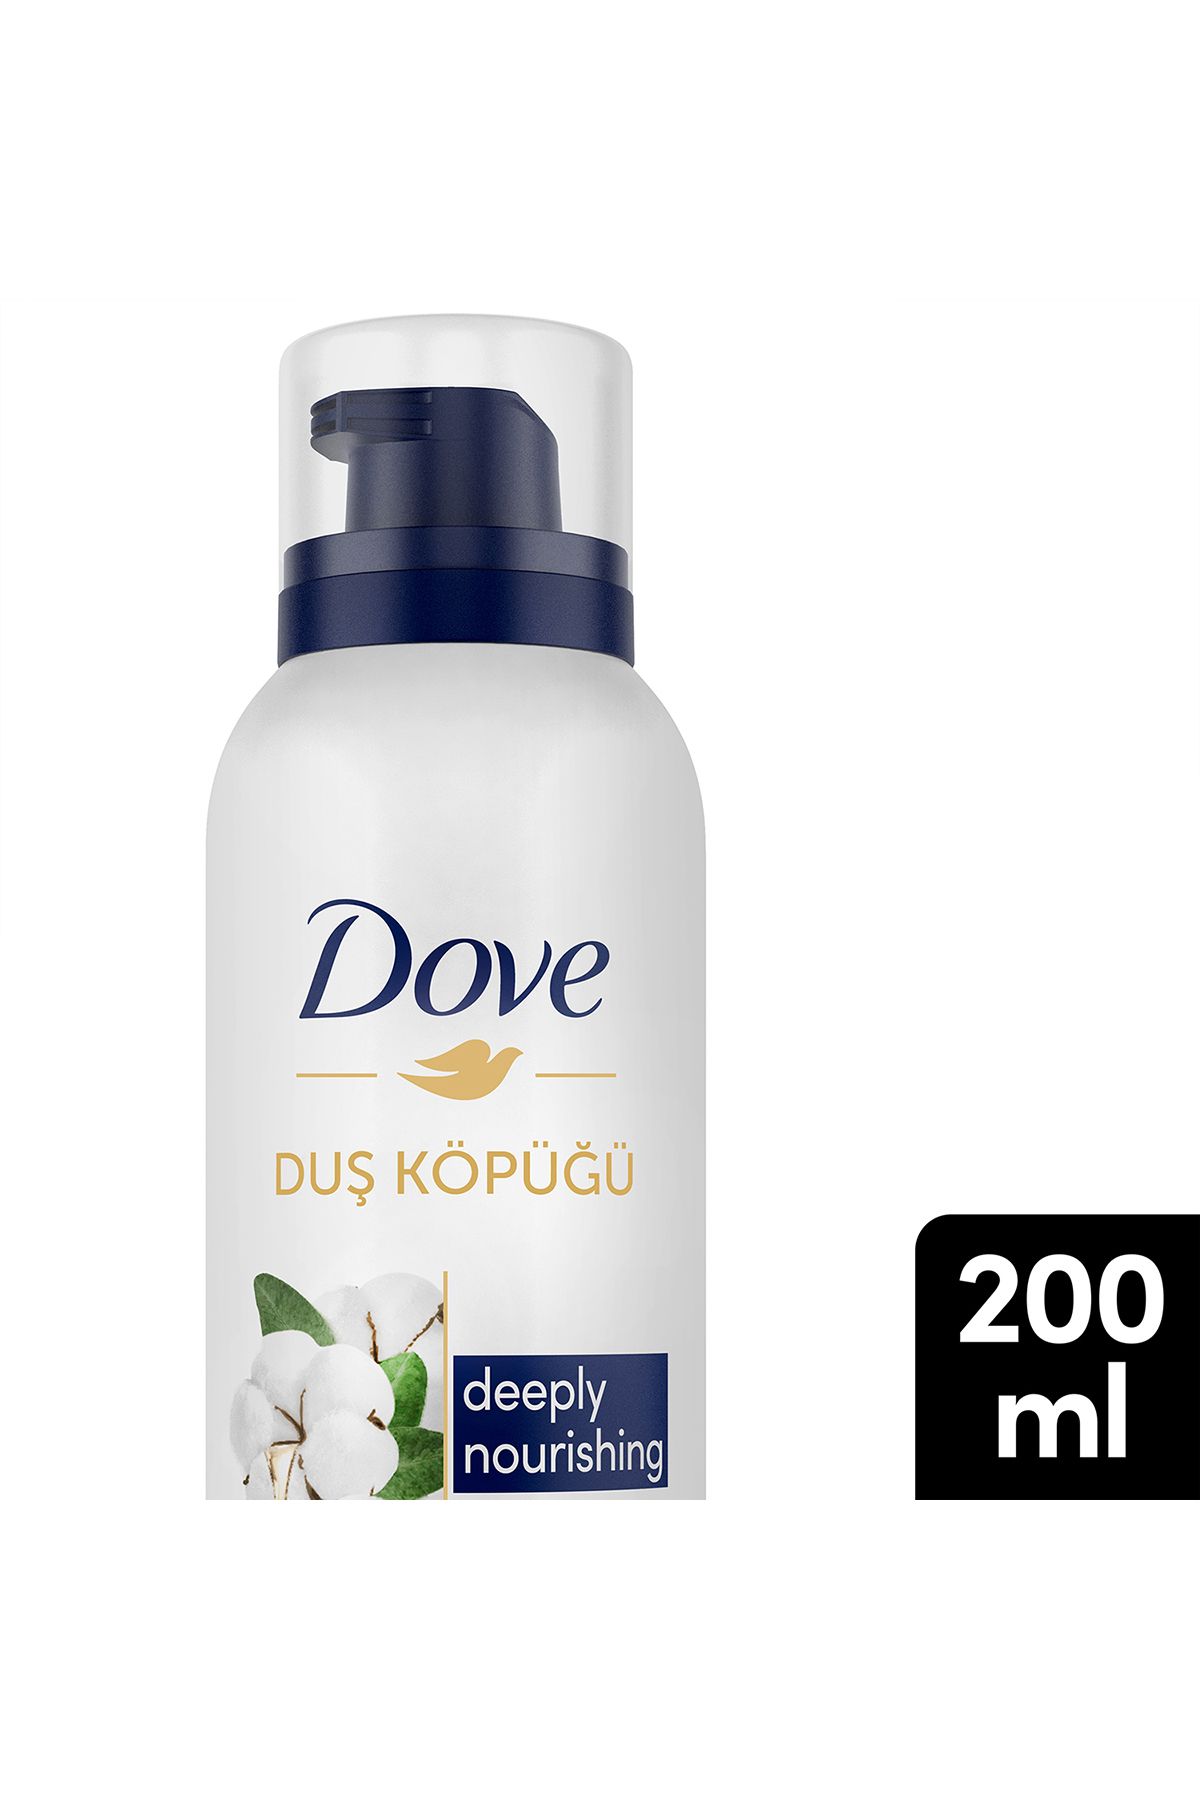 Dove Duş Köpüğü Deeply Nourishing 10 Kat Daha Yoğun Köpüğe Sahip Formül 200 ml X1